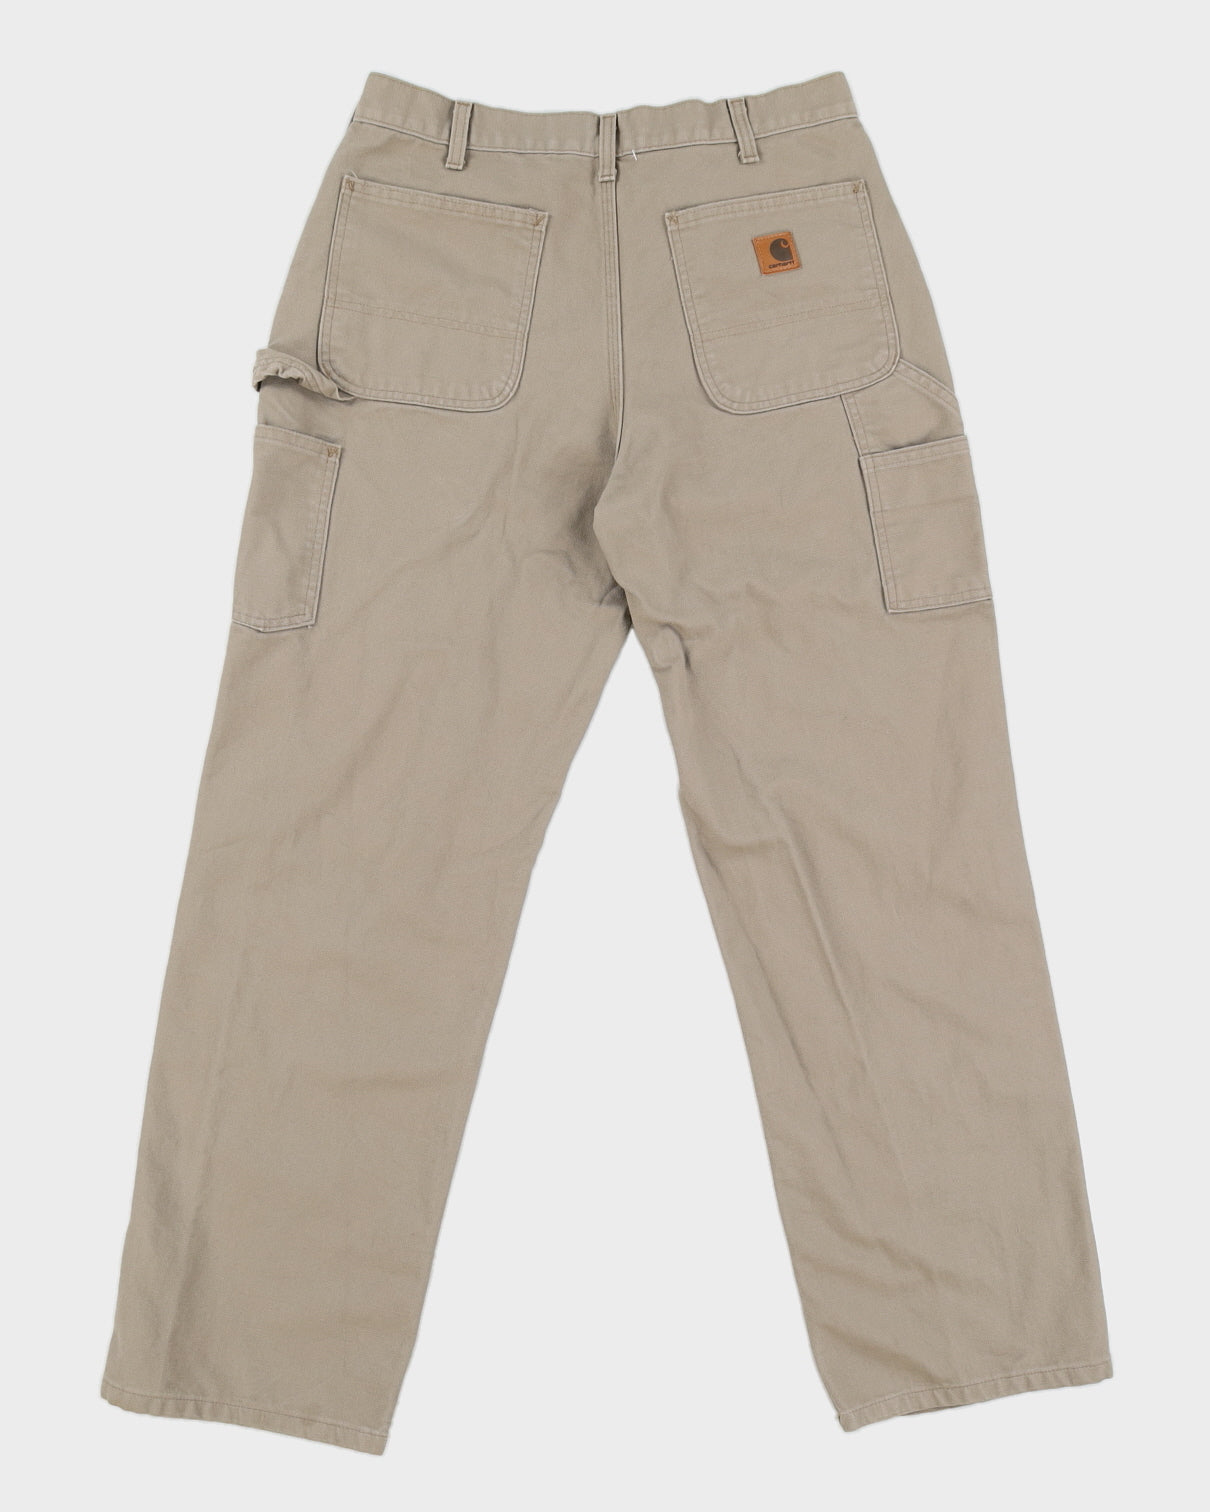 00s Carhartt Beige Work Trousers - W34 L31